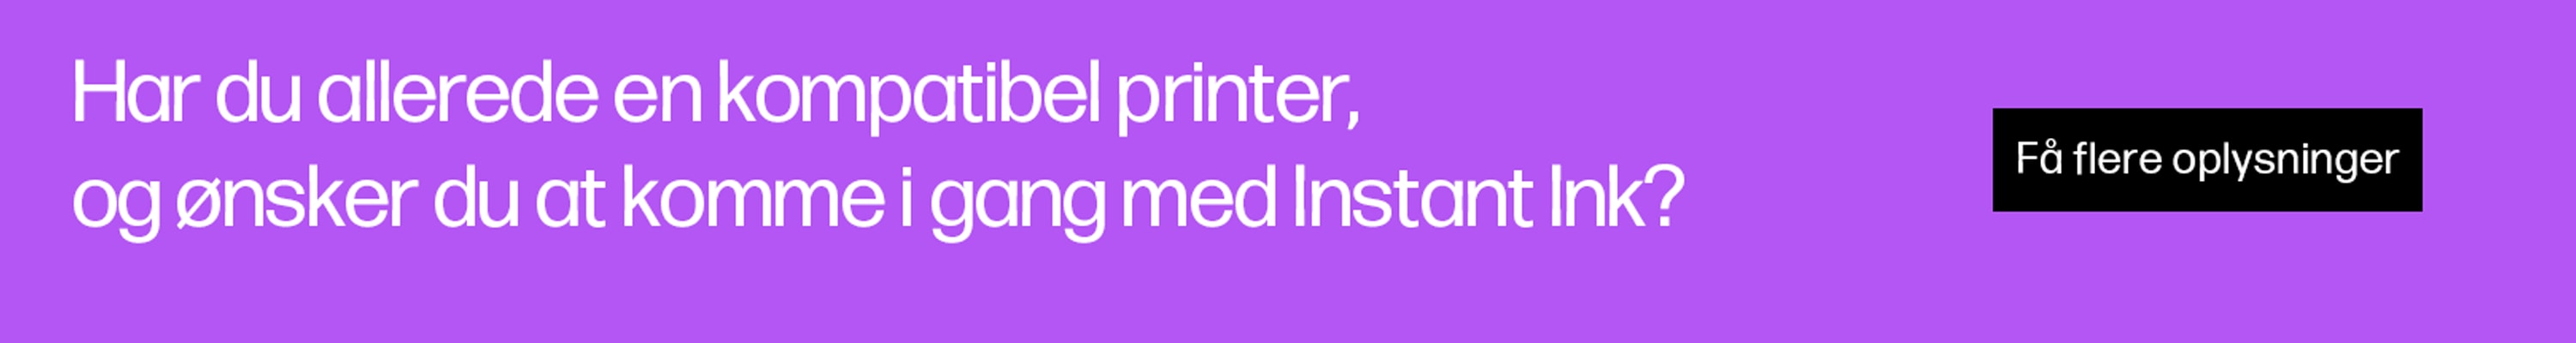 Har du allerede en kompatibel printer, og ønsker du at komme i gang med Instant Ink